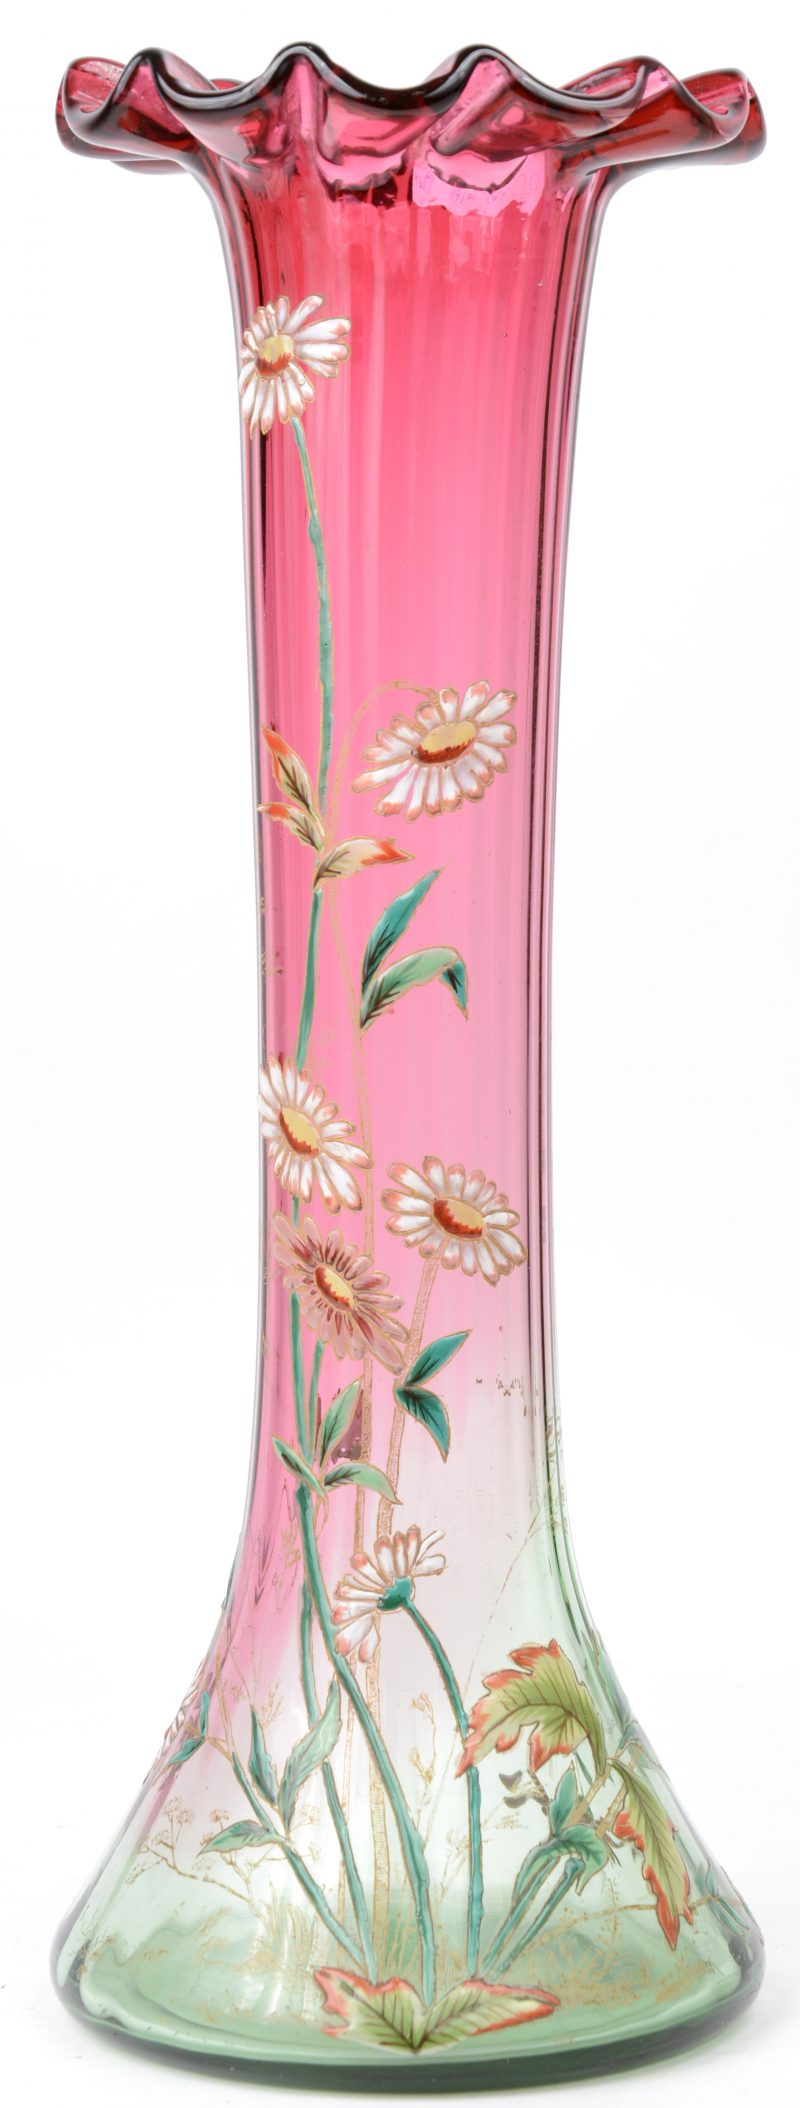 Een vaas van tweekleurig glas met een handgeschilderd emaildecor van bloemen. Omstreeks 1900.